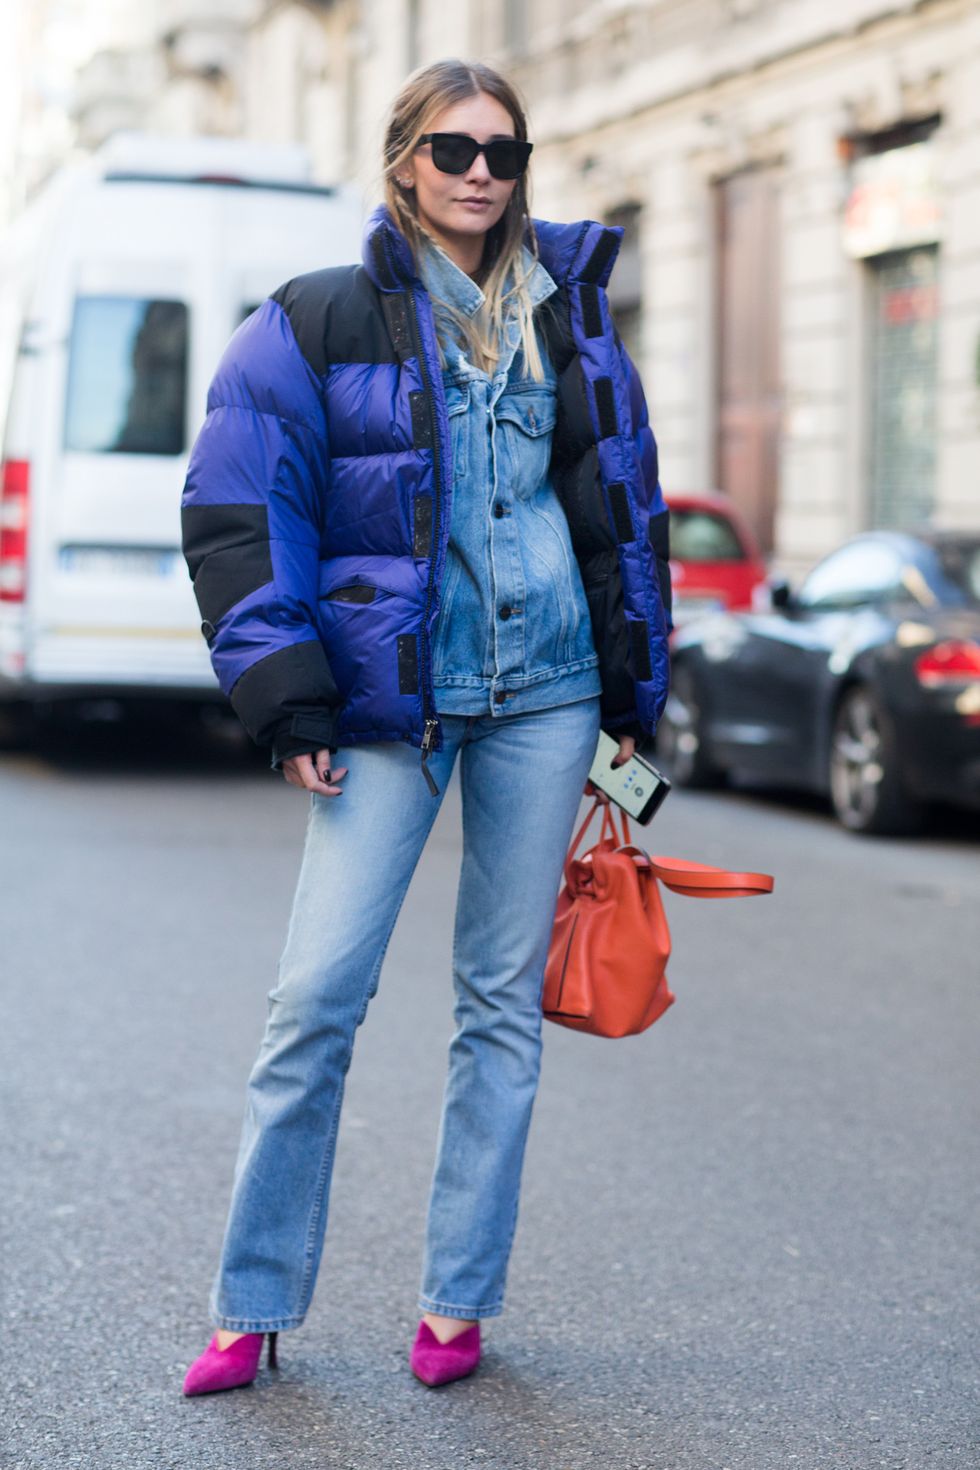 How to Wear a Denim Jacket in Winter